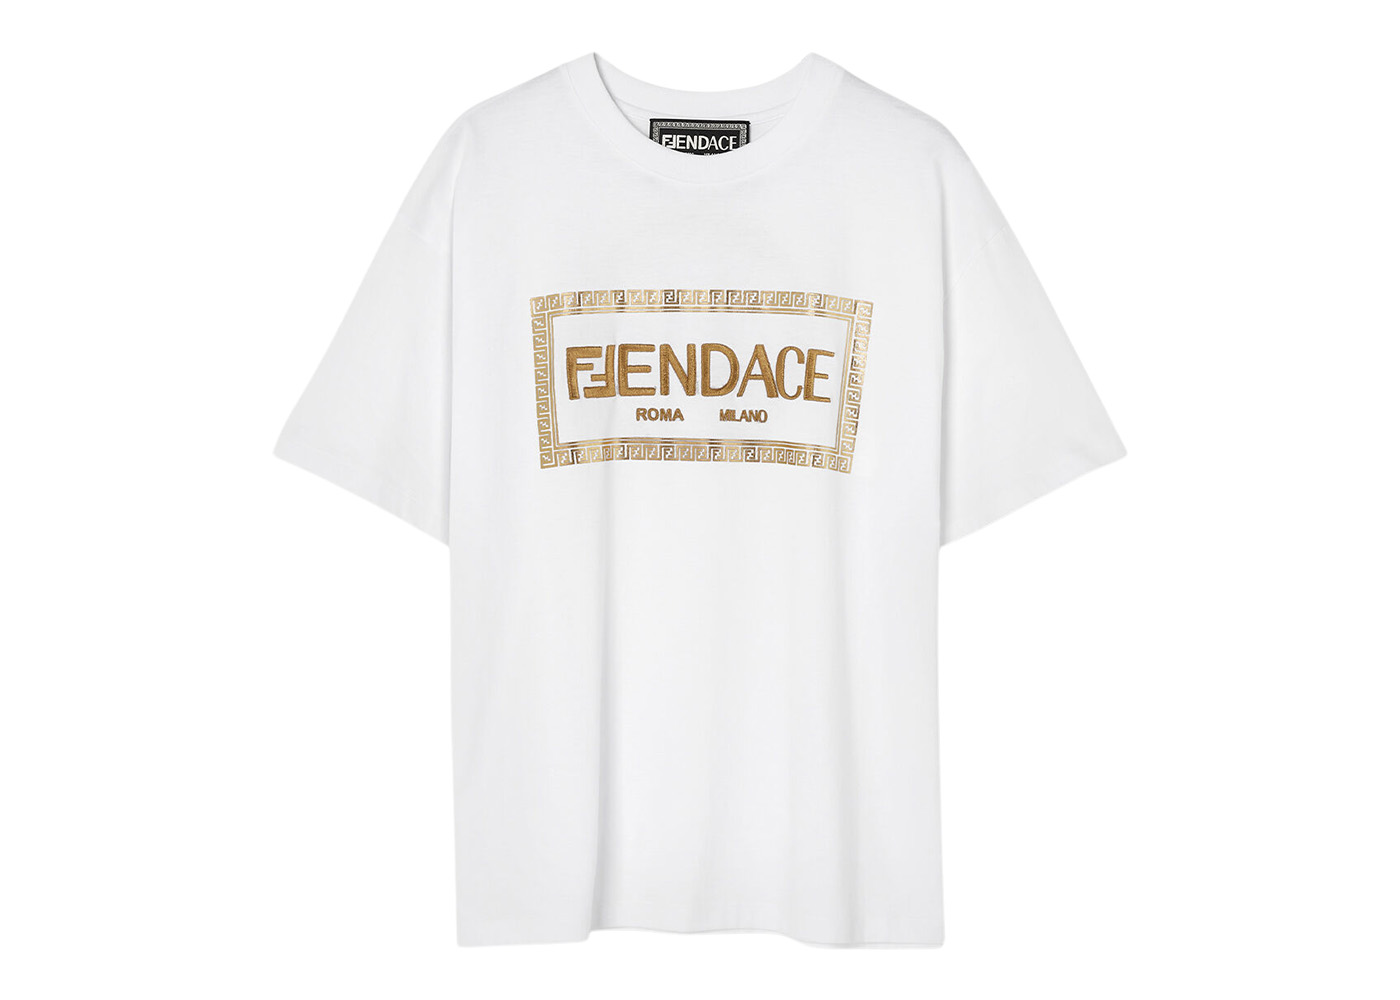 Fendi Fendace Logo Mens T-shirt White/Gold